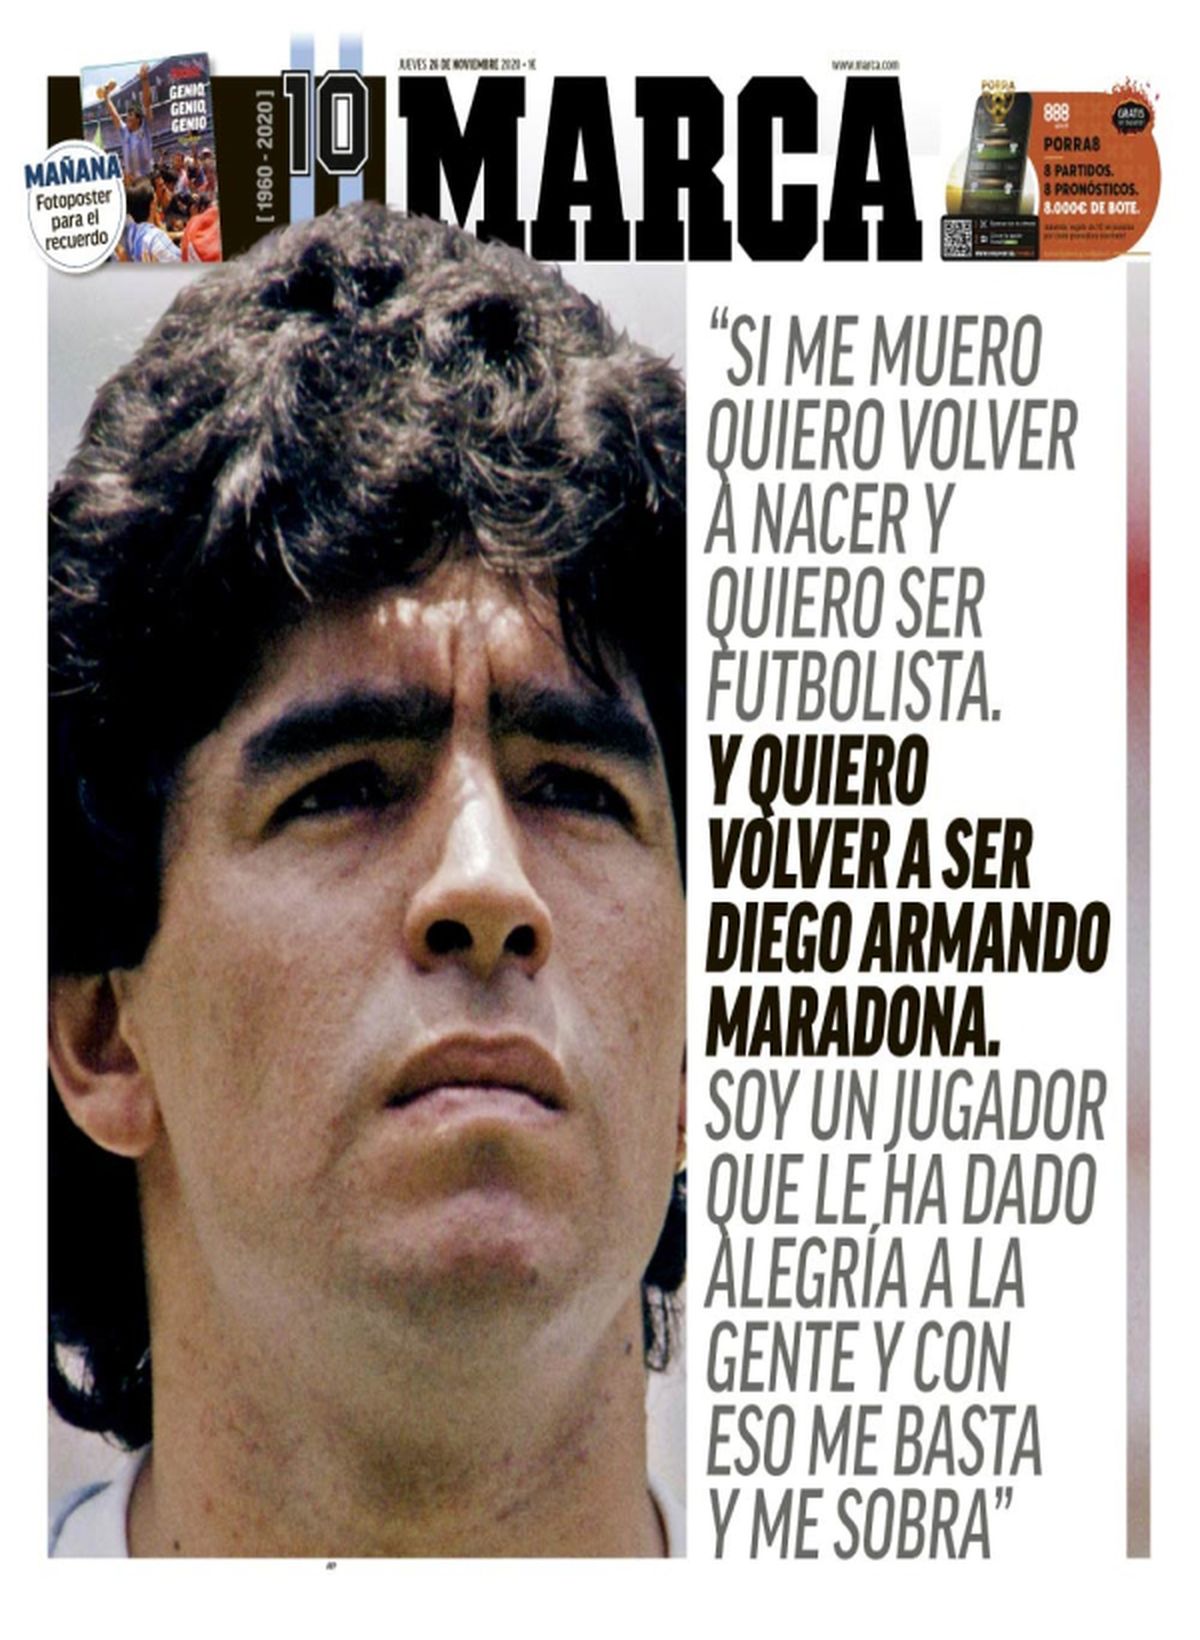 „Dumnezeu a murit” » Cum arată primele pagini ale marilor ziare din lume după decesul lui Diego Maradona